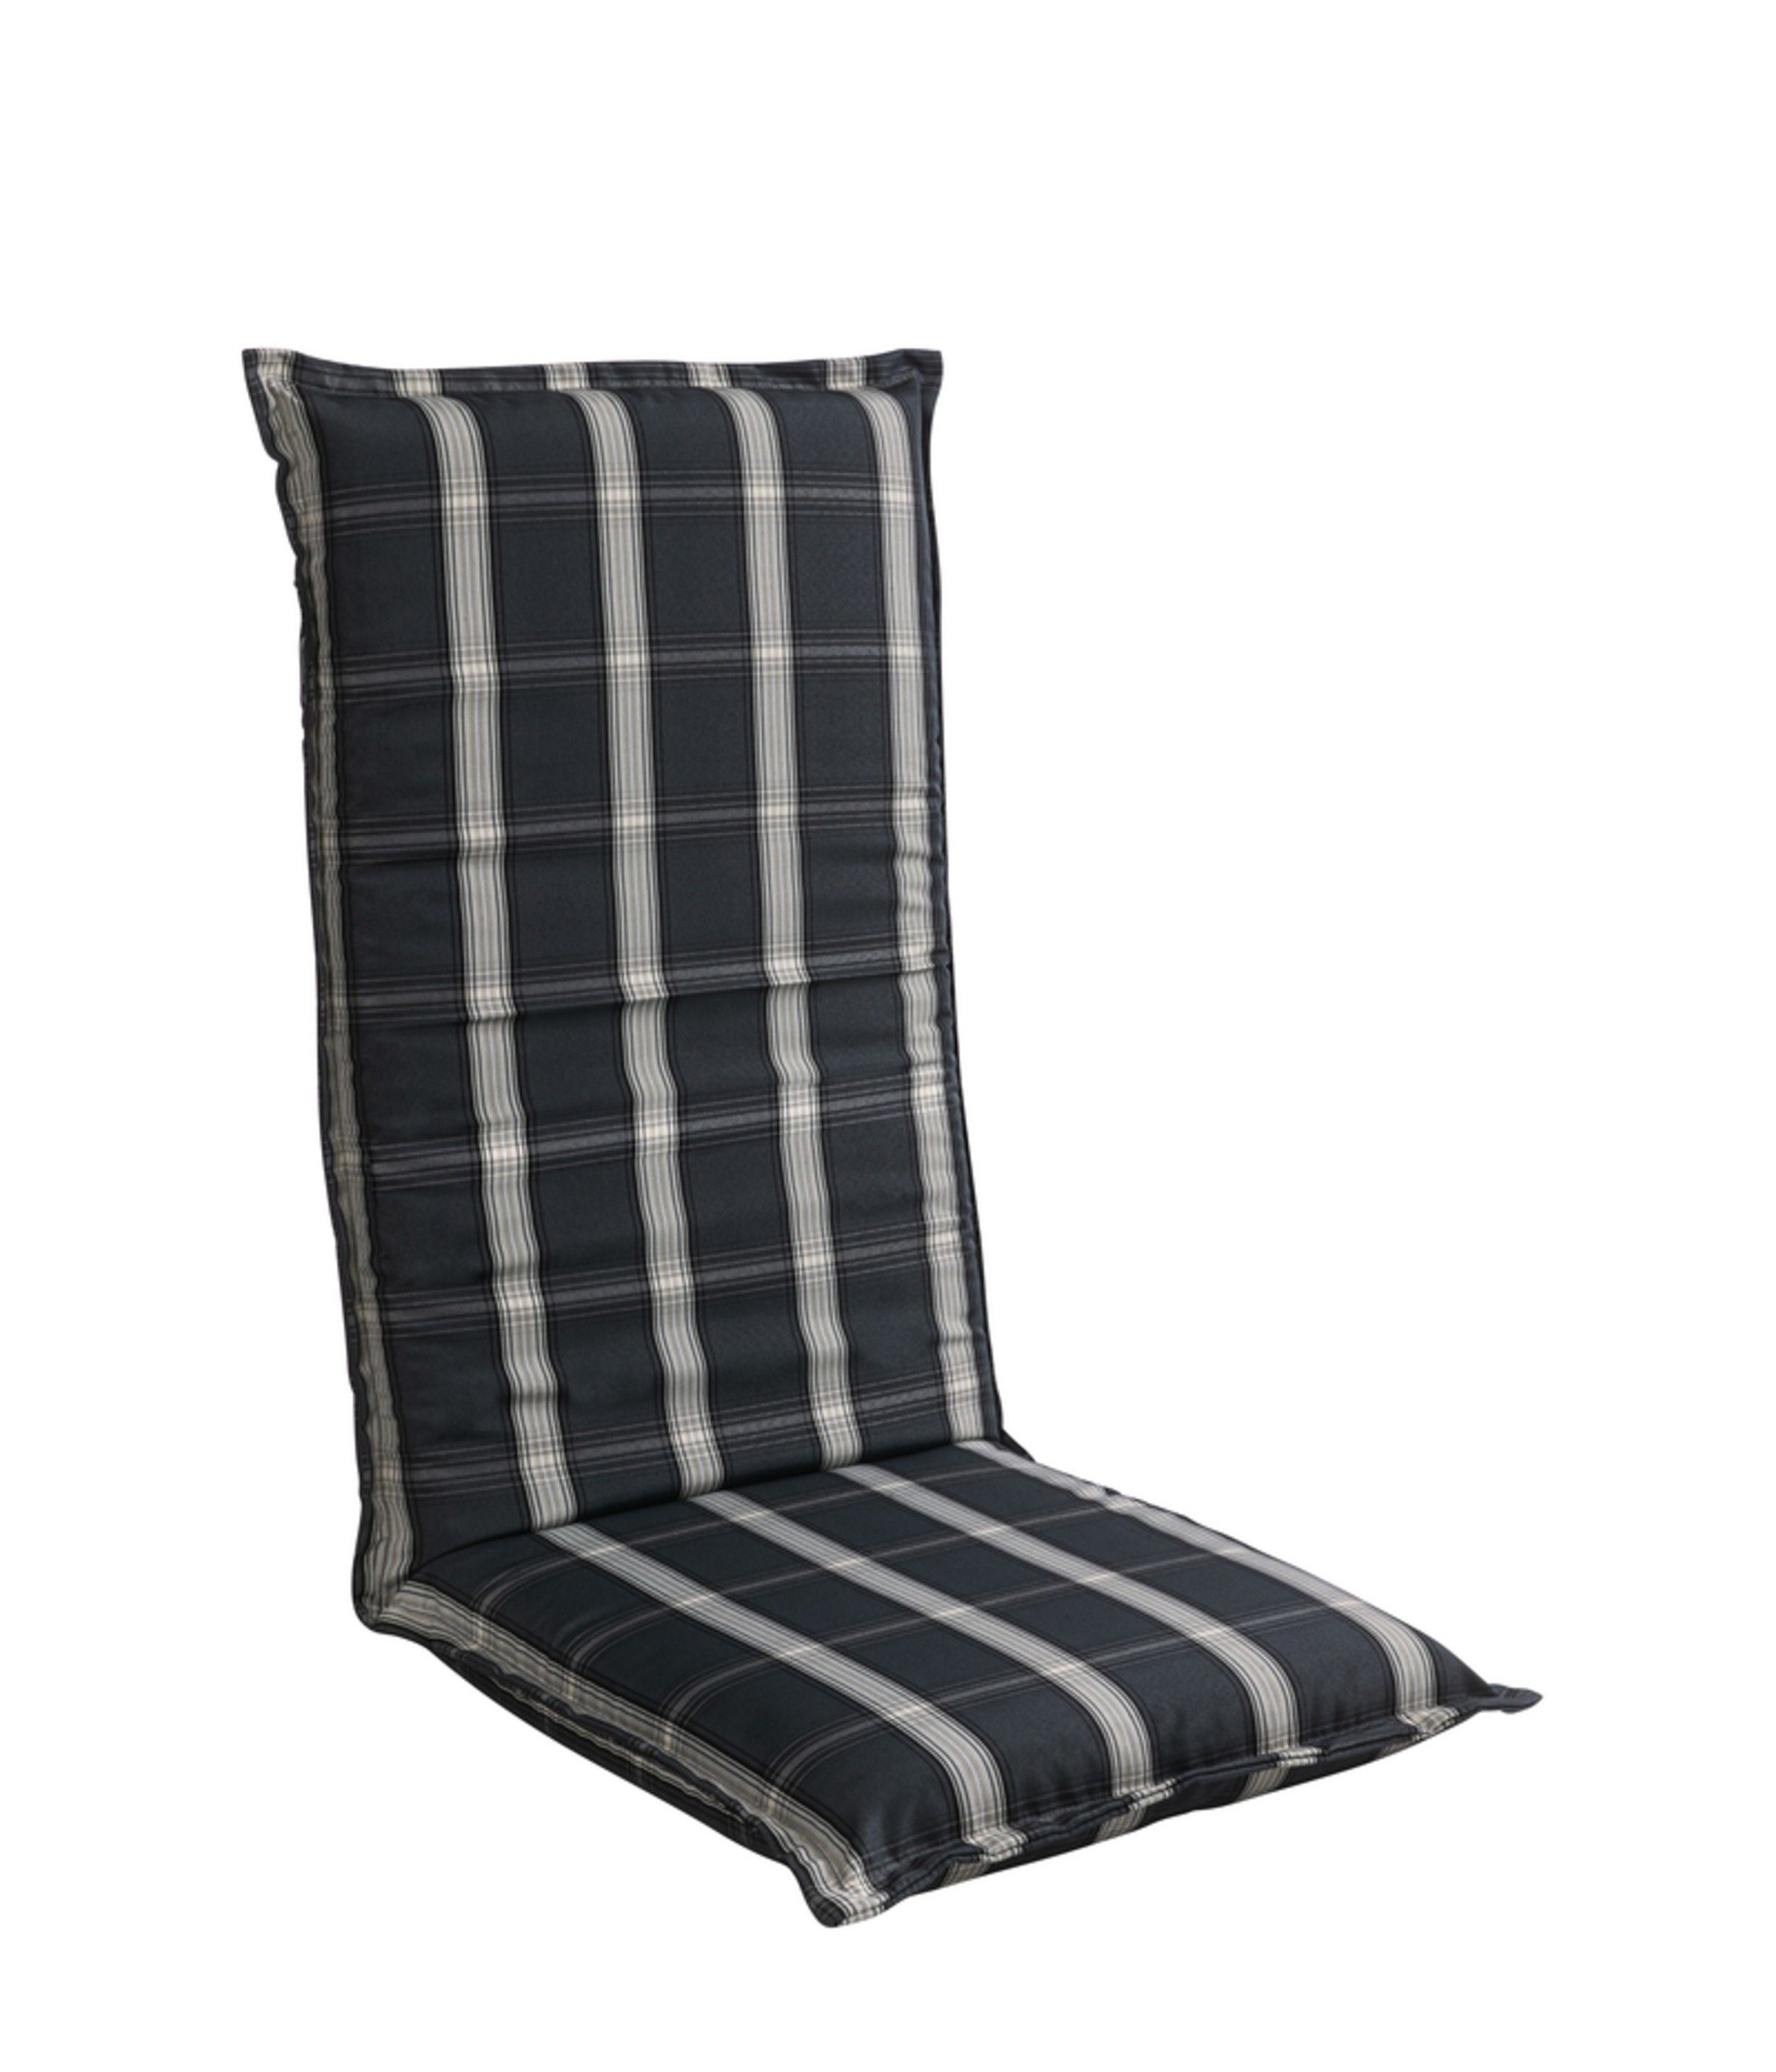 Dehner Polsterauflage Lancy, ca. 120 x 50 x 8 cm, dunkelgrau/grau/creme,  Gemütliches Sitzkissen für Hochlehner mit einem karierten Polsterbezug